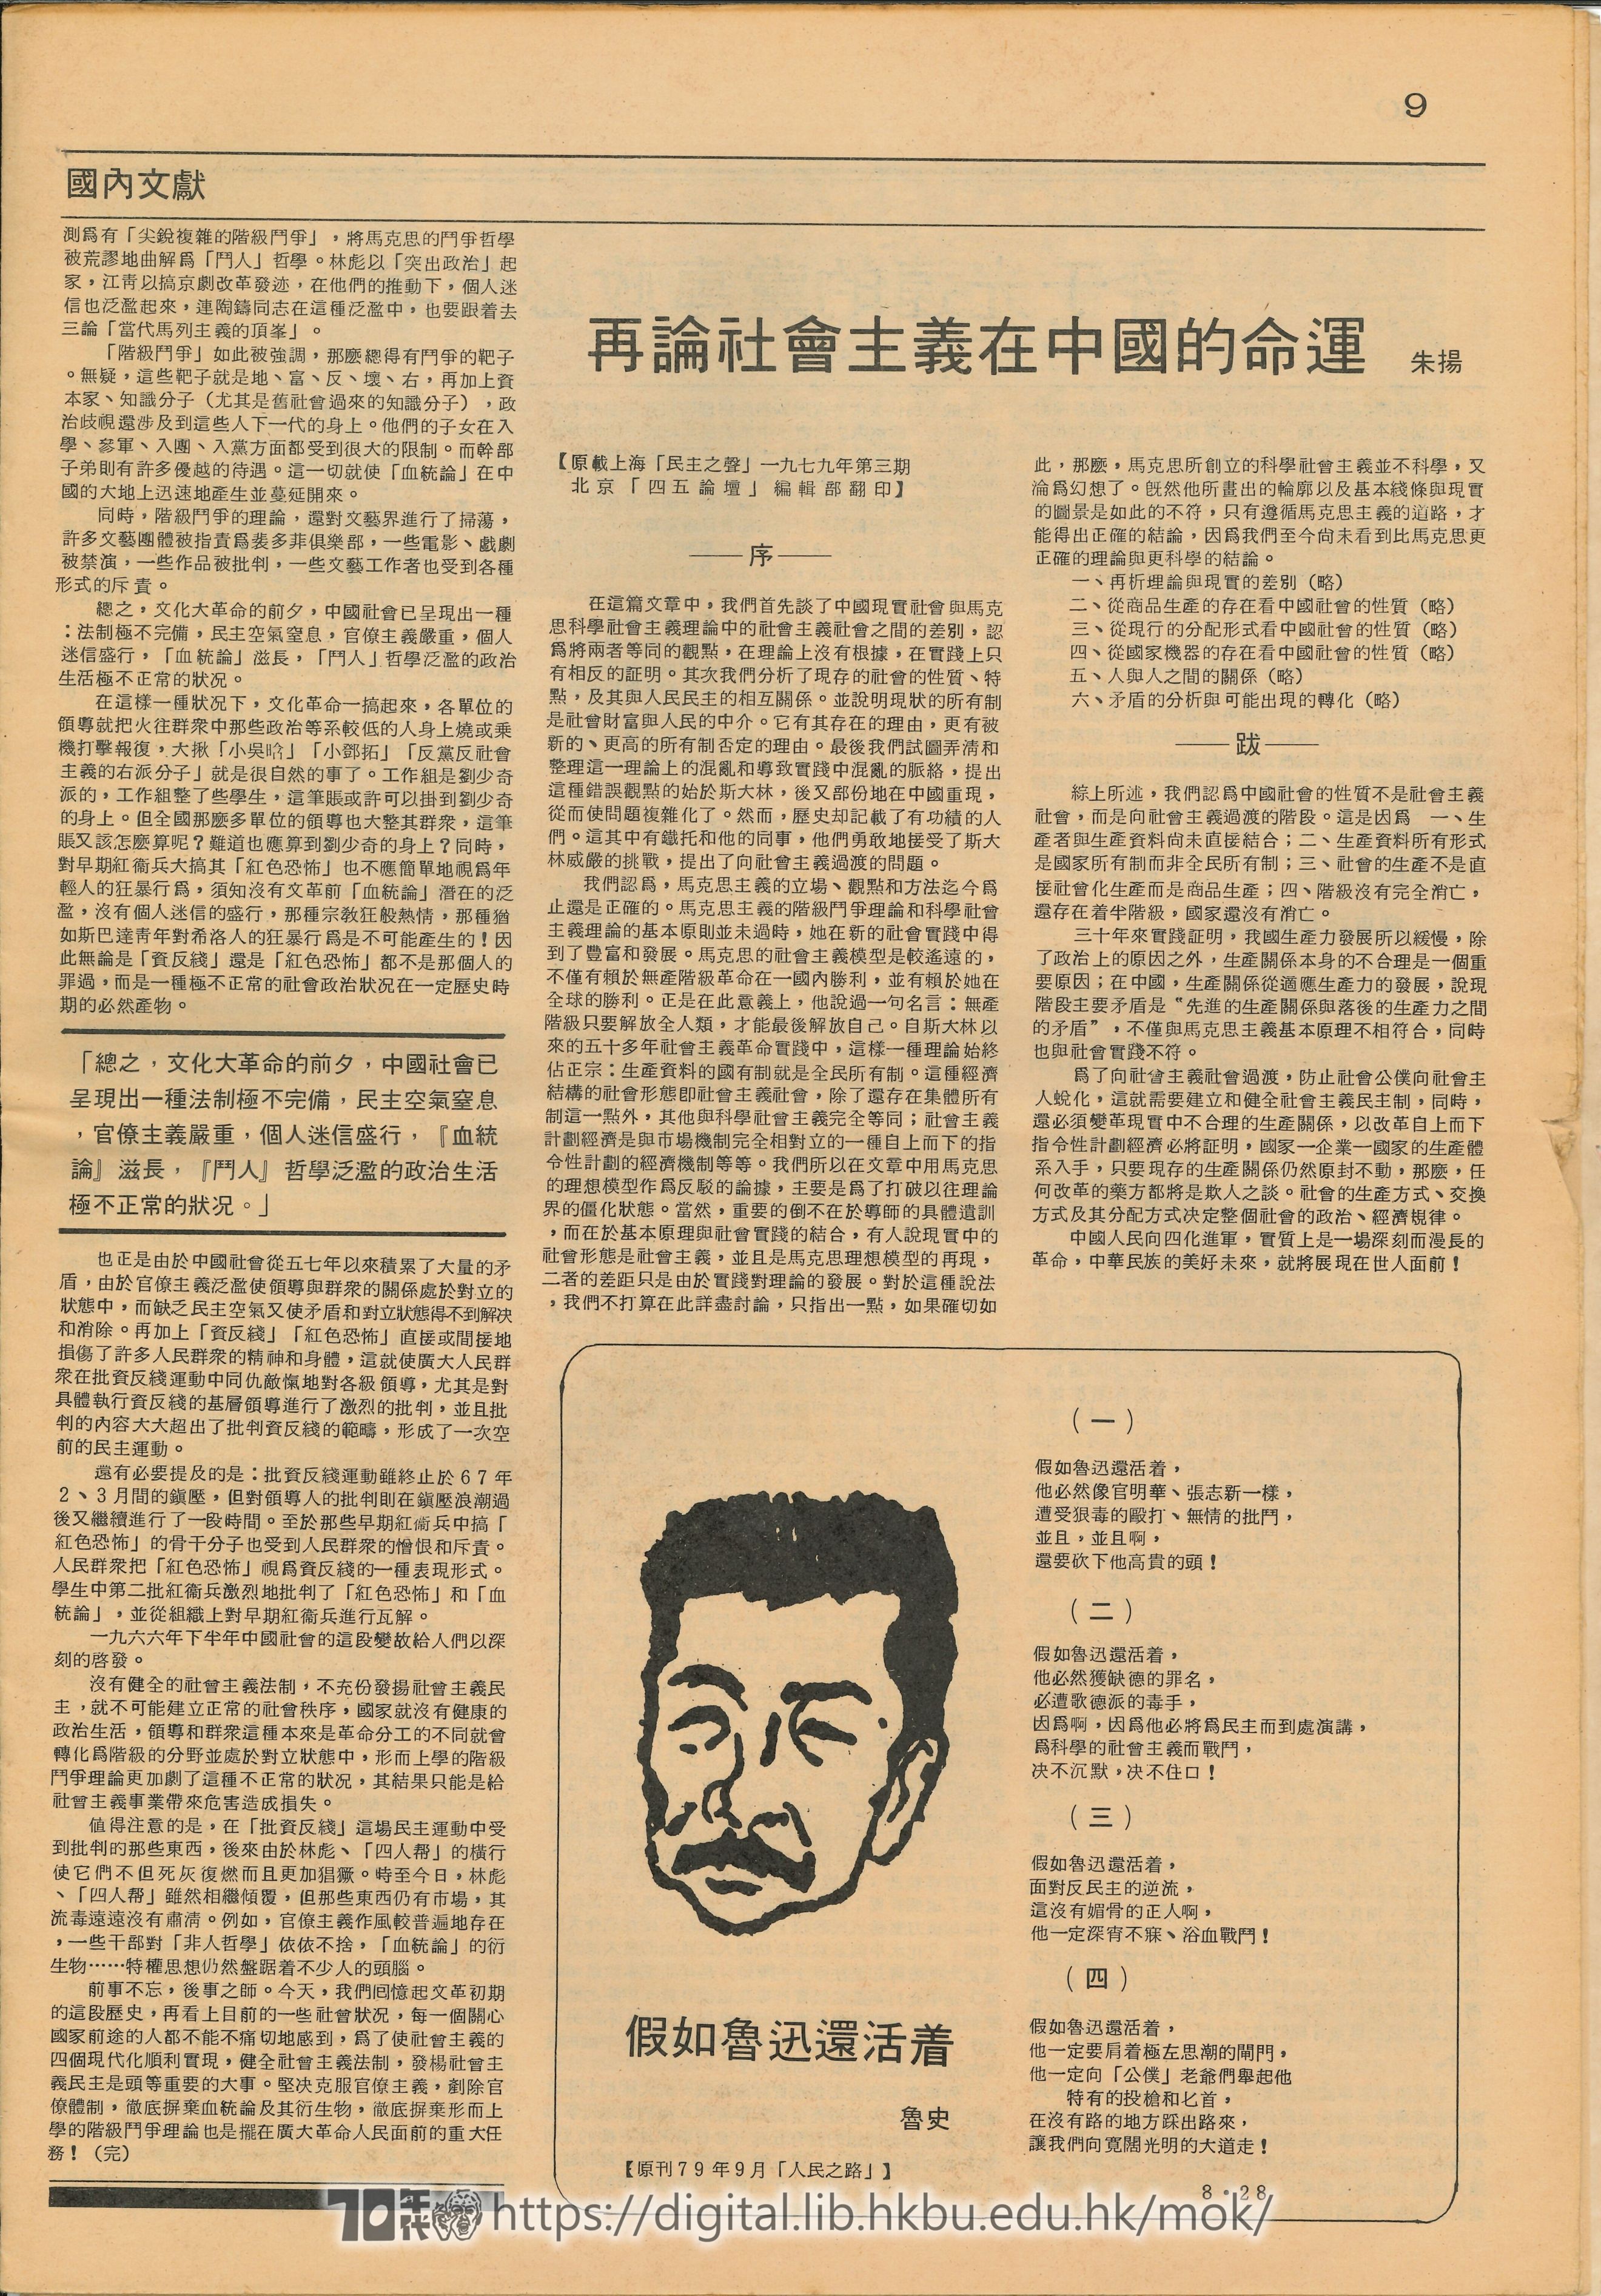  7 國內文獻-文革中真正的羣眾運動 批資反綫- 原載廣州「人民之聲」七九年六月号  